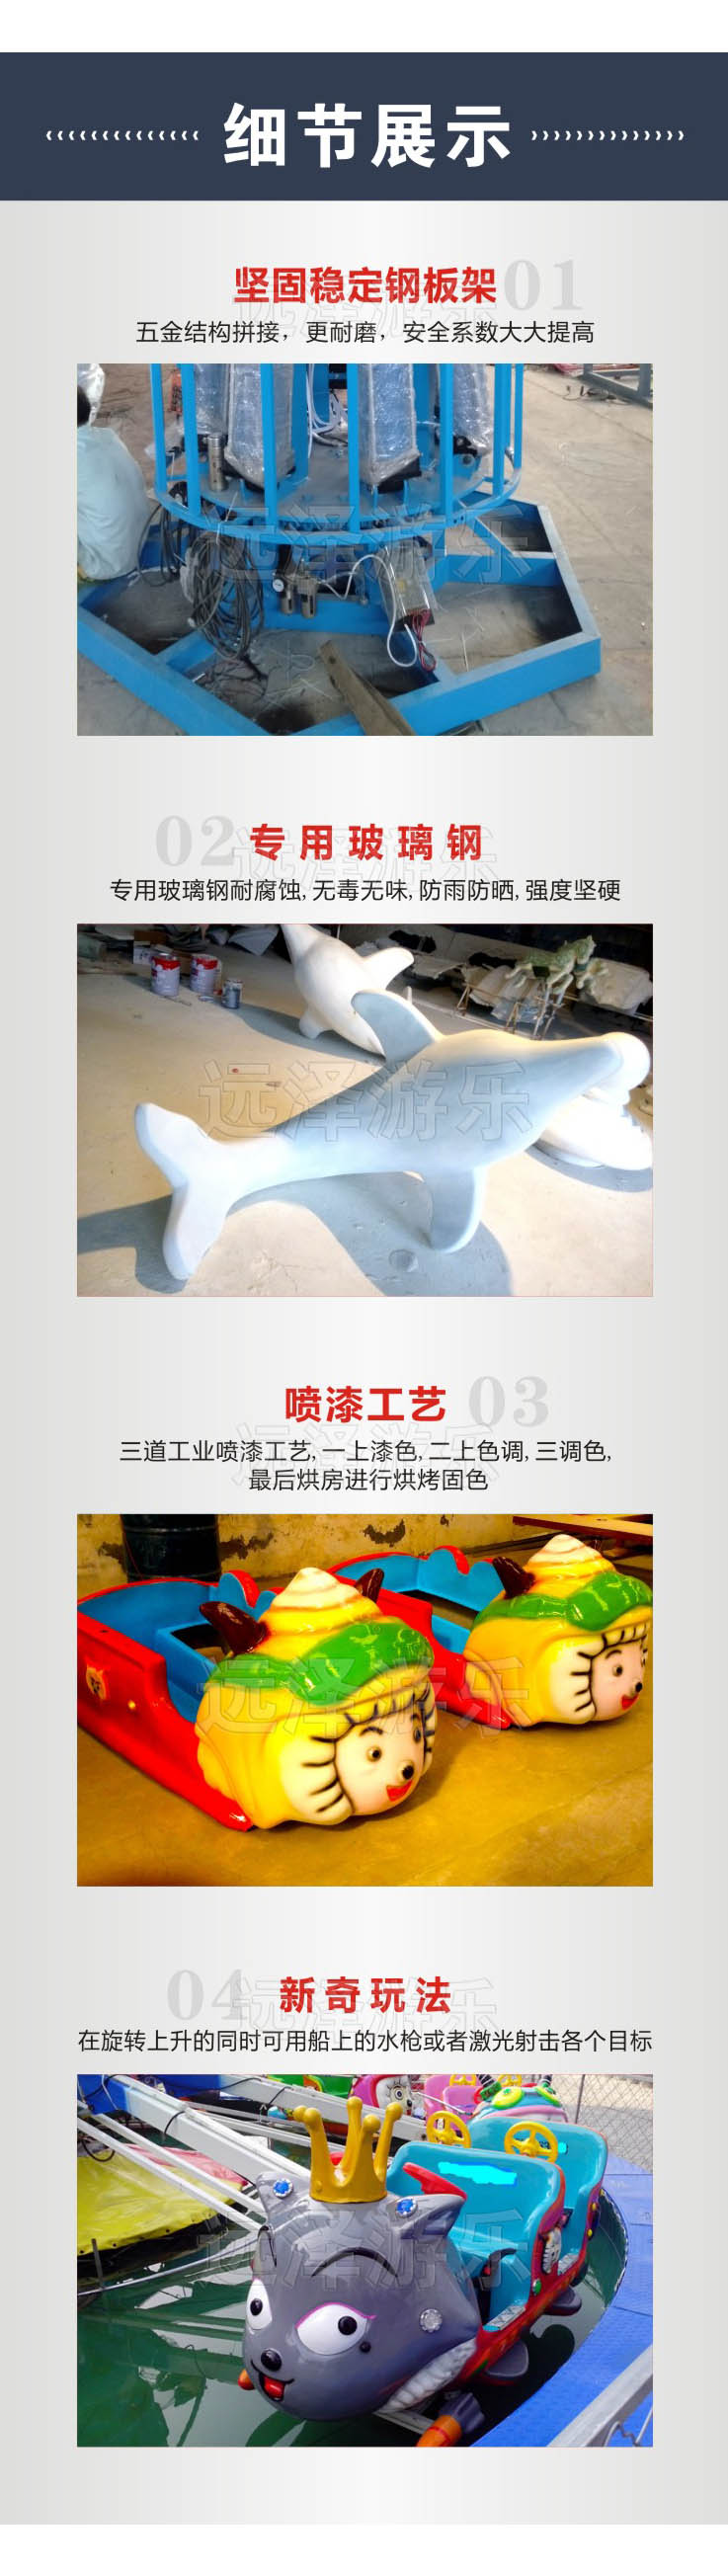 赤峰自控飞羊 公园喜洋洋飞机游乐设备 喜羊羊儿童自控飞机 4